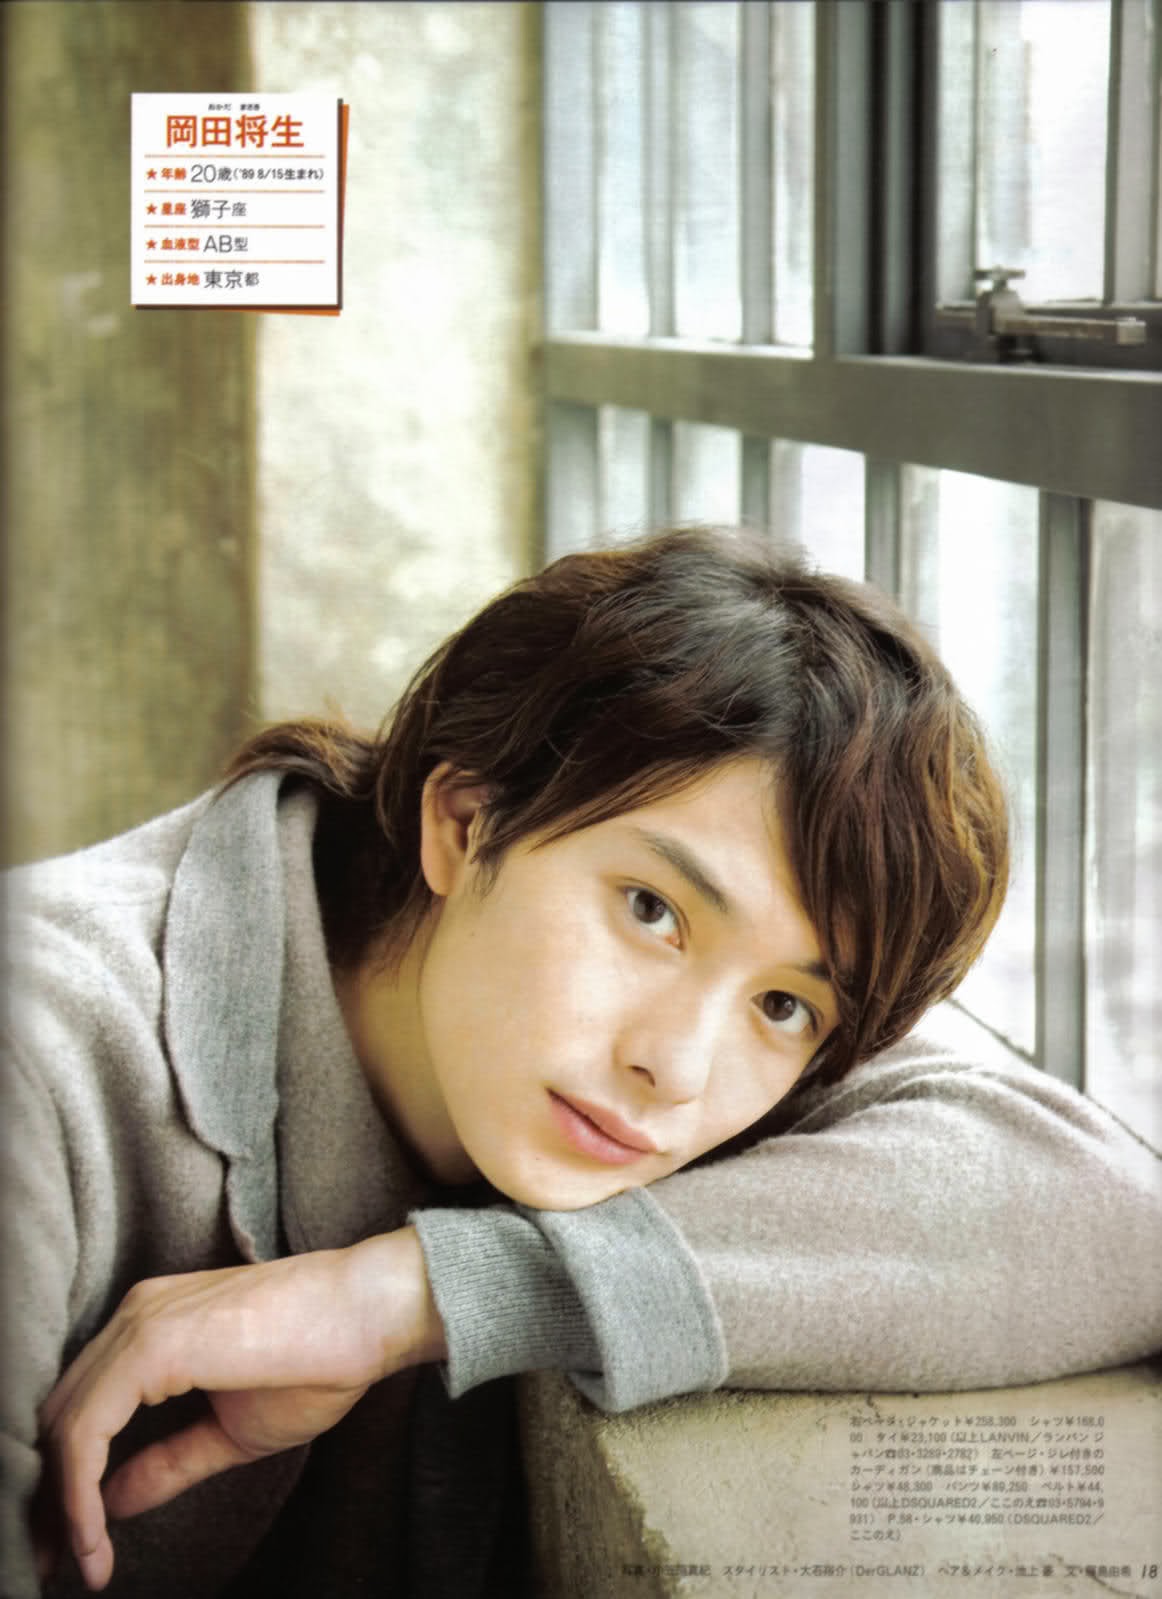 Eunike's Diary: IDOLS : 10 Actor Jepang Terganteng - Ikemen